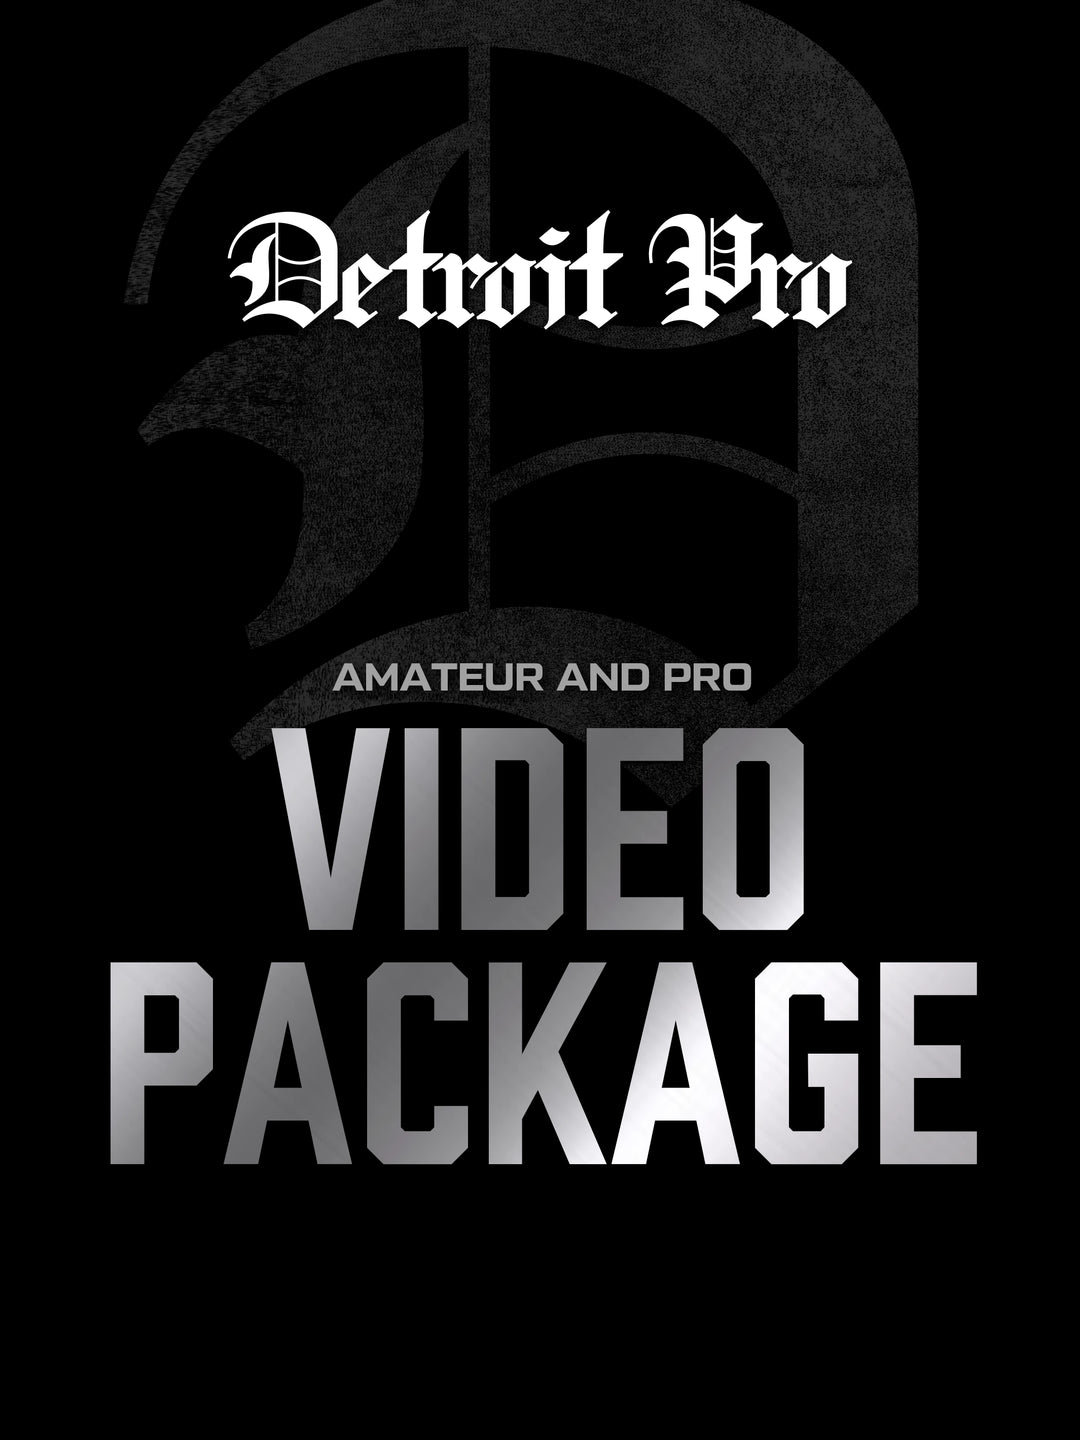 Detroit Pro Video Package